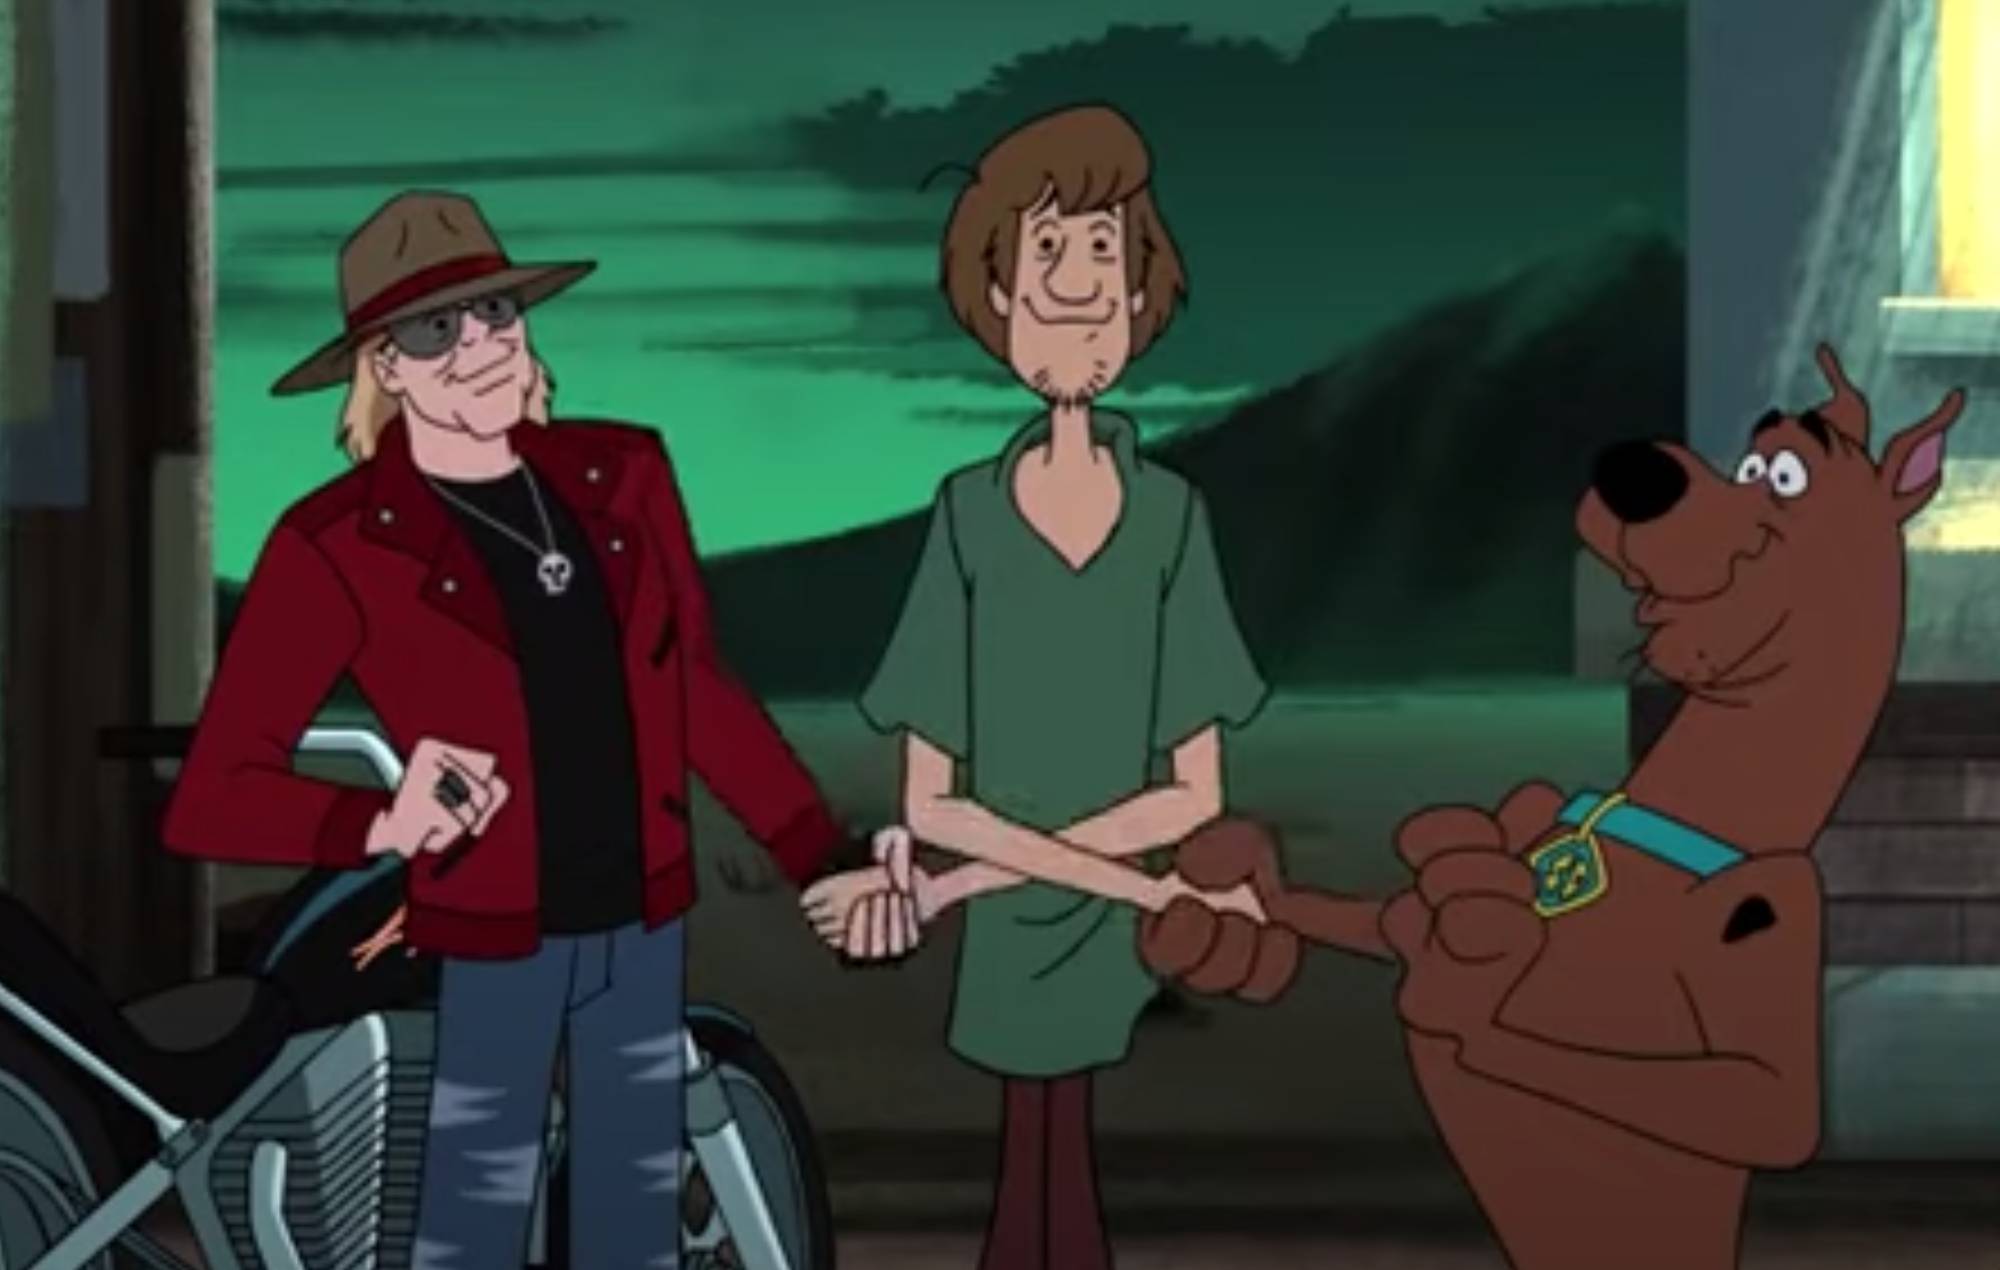 Mira cómo Axl Rose de Guns N' Roses hace un cameo animado en el nuevo episodio de 'Scooby Doo'